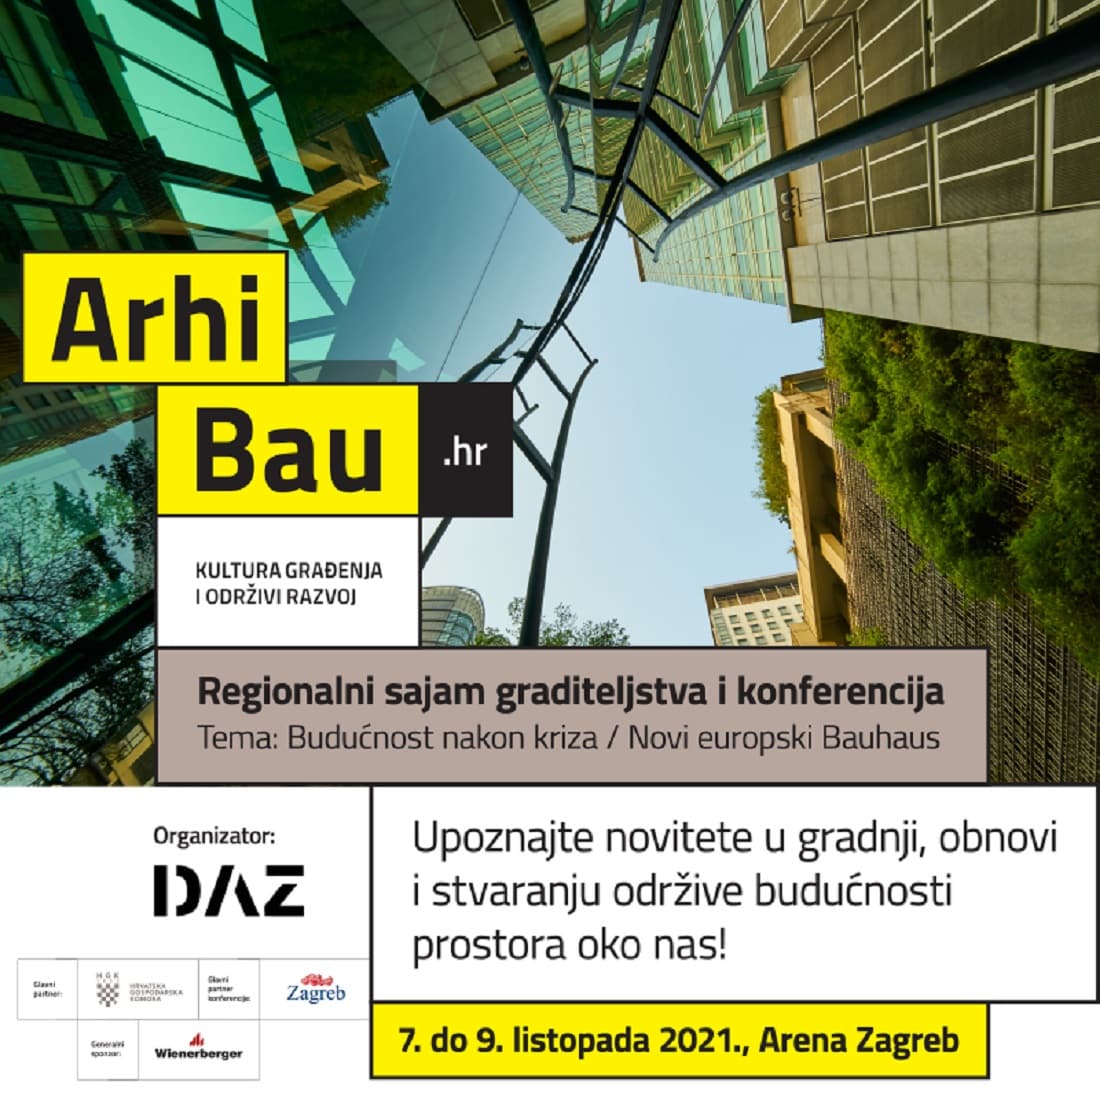 Arhibau_regionalni_sajam_graditeljstva_i_konferencija Održavanje Međunarodnog sajma i konferencije graditeljstva i održivog razvoja